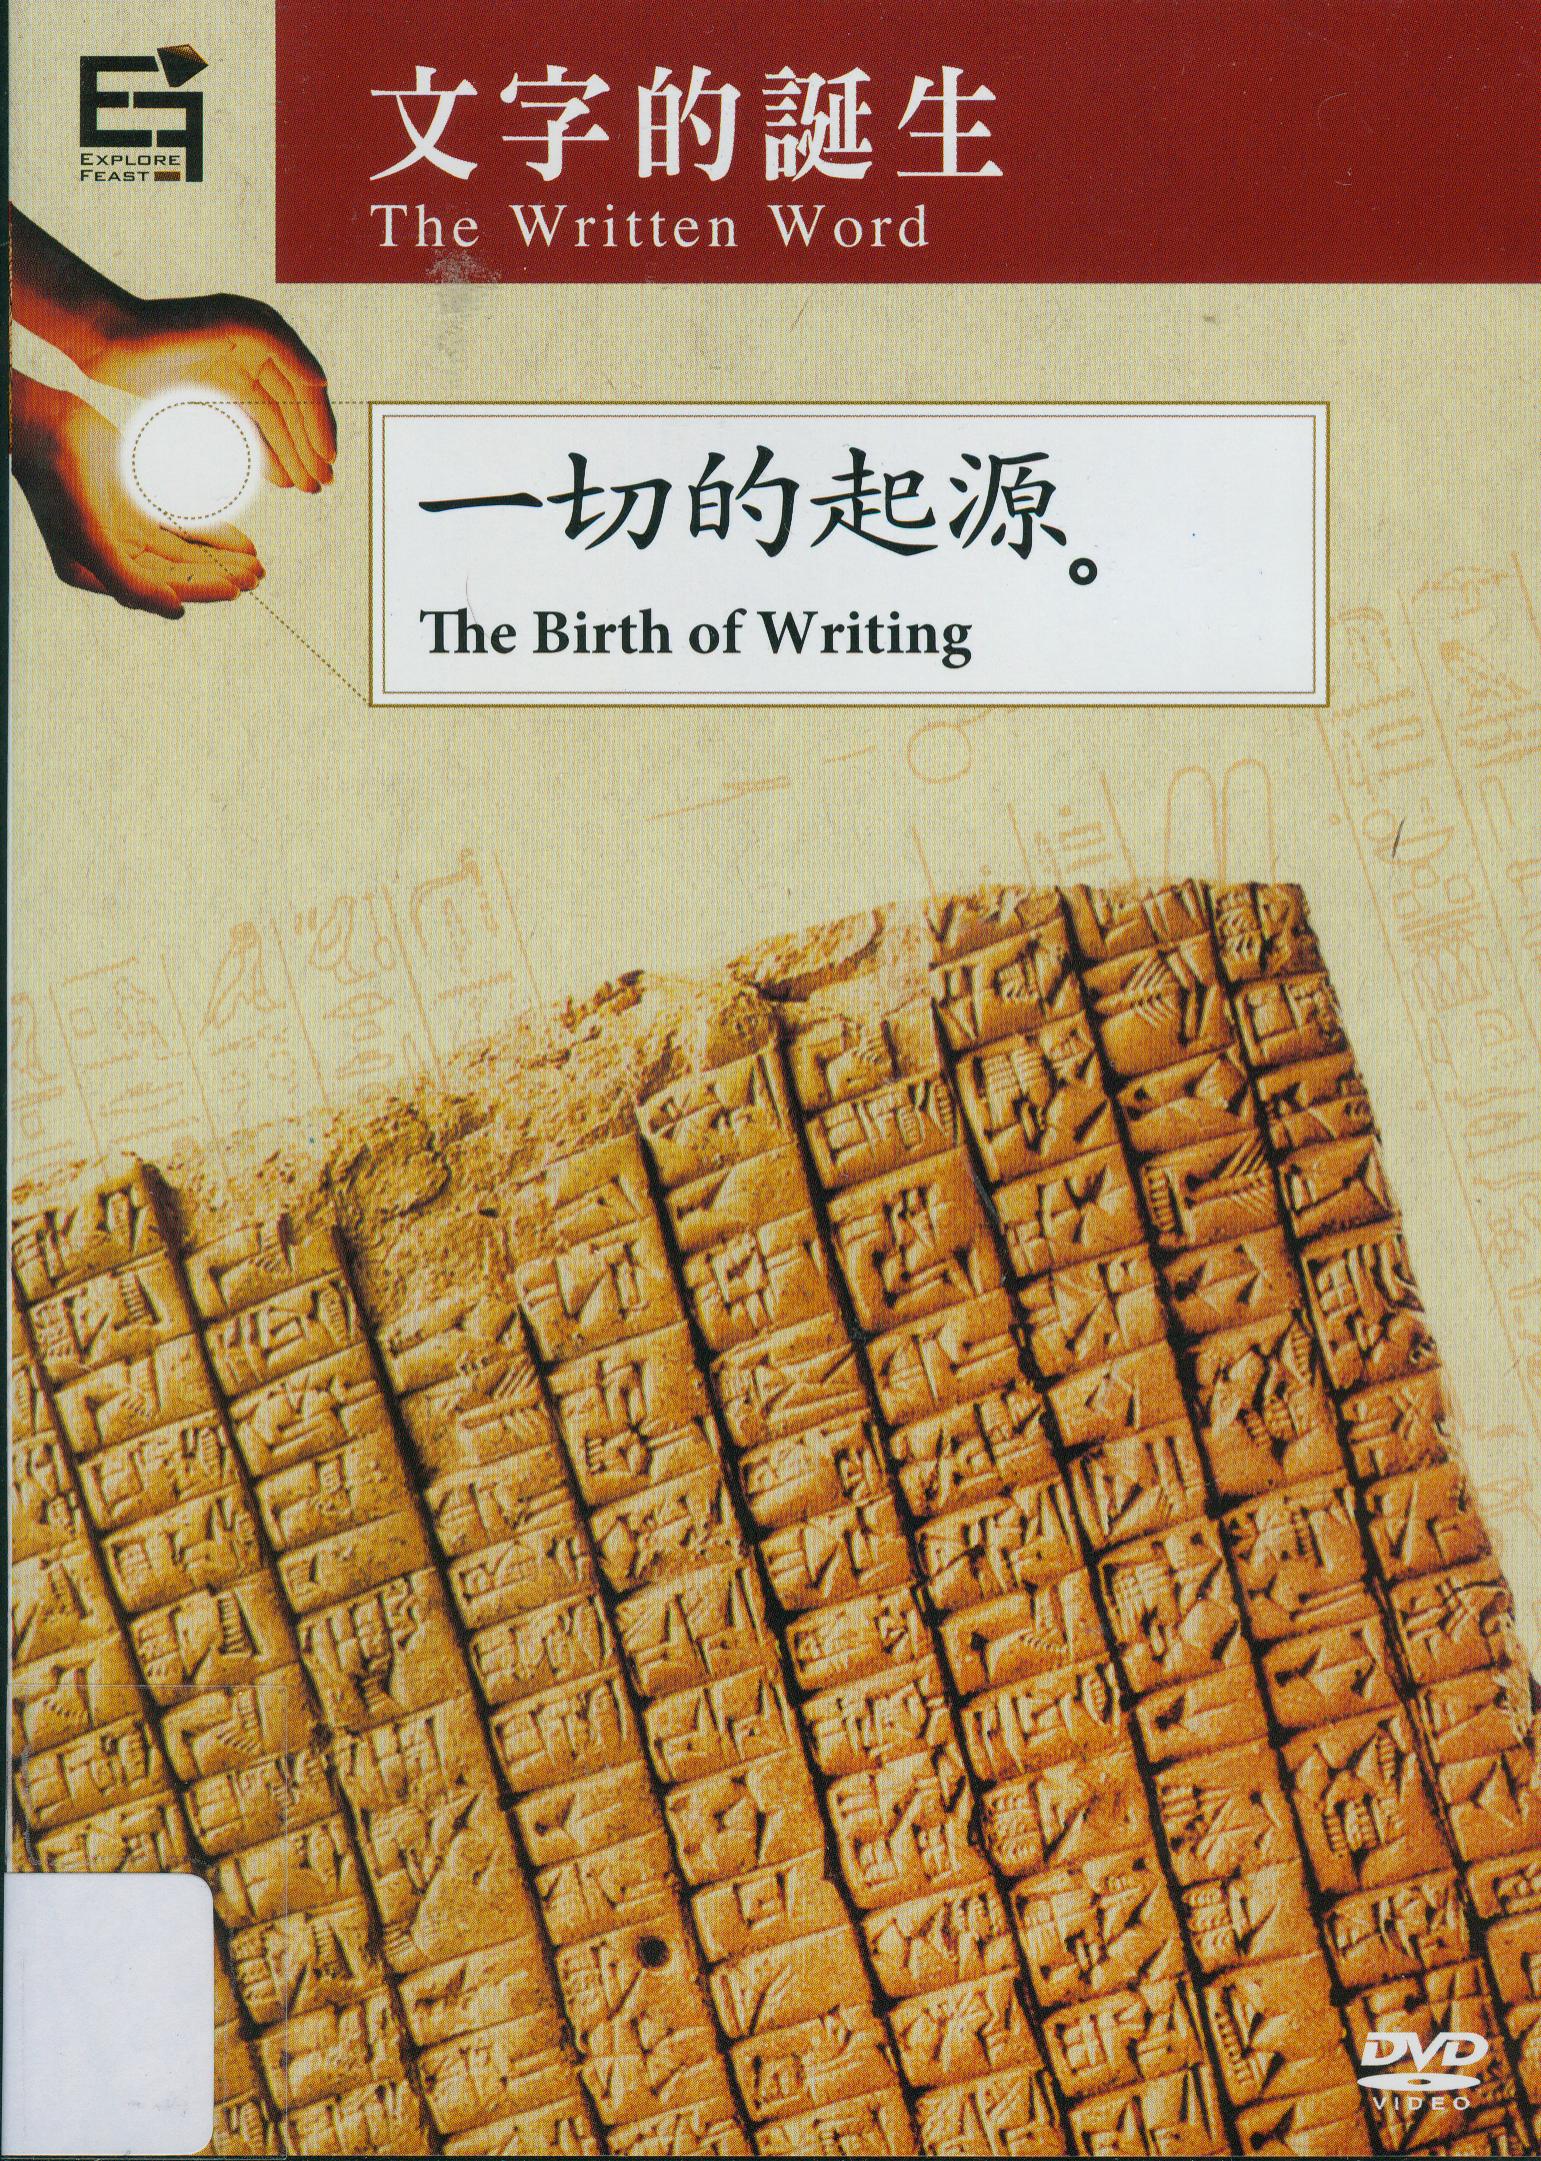 文字的誕生[1] : 一切的起源 = The written word[1]:the birth of writing